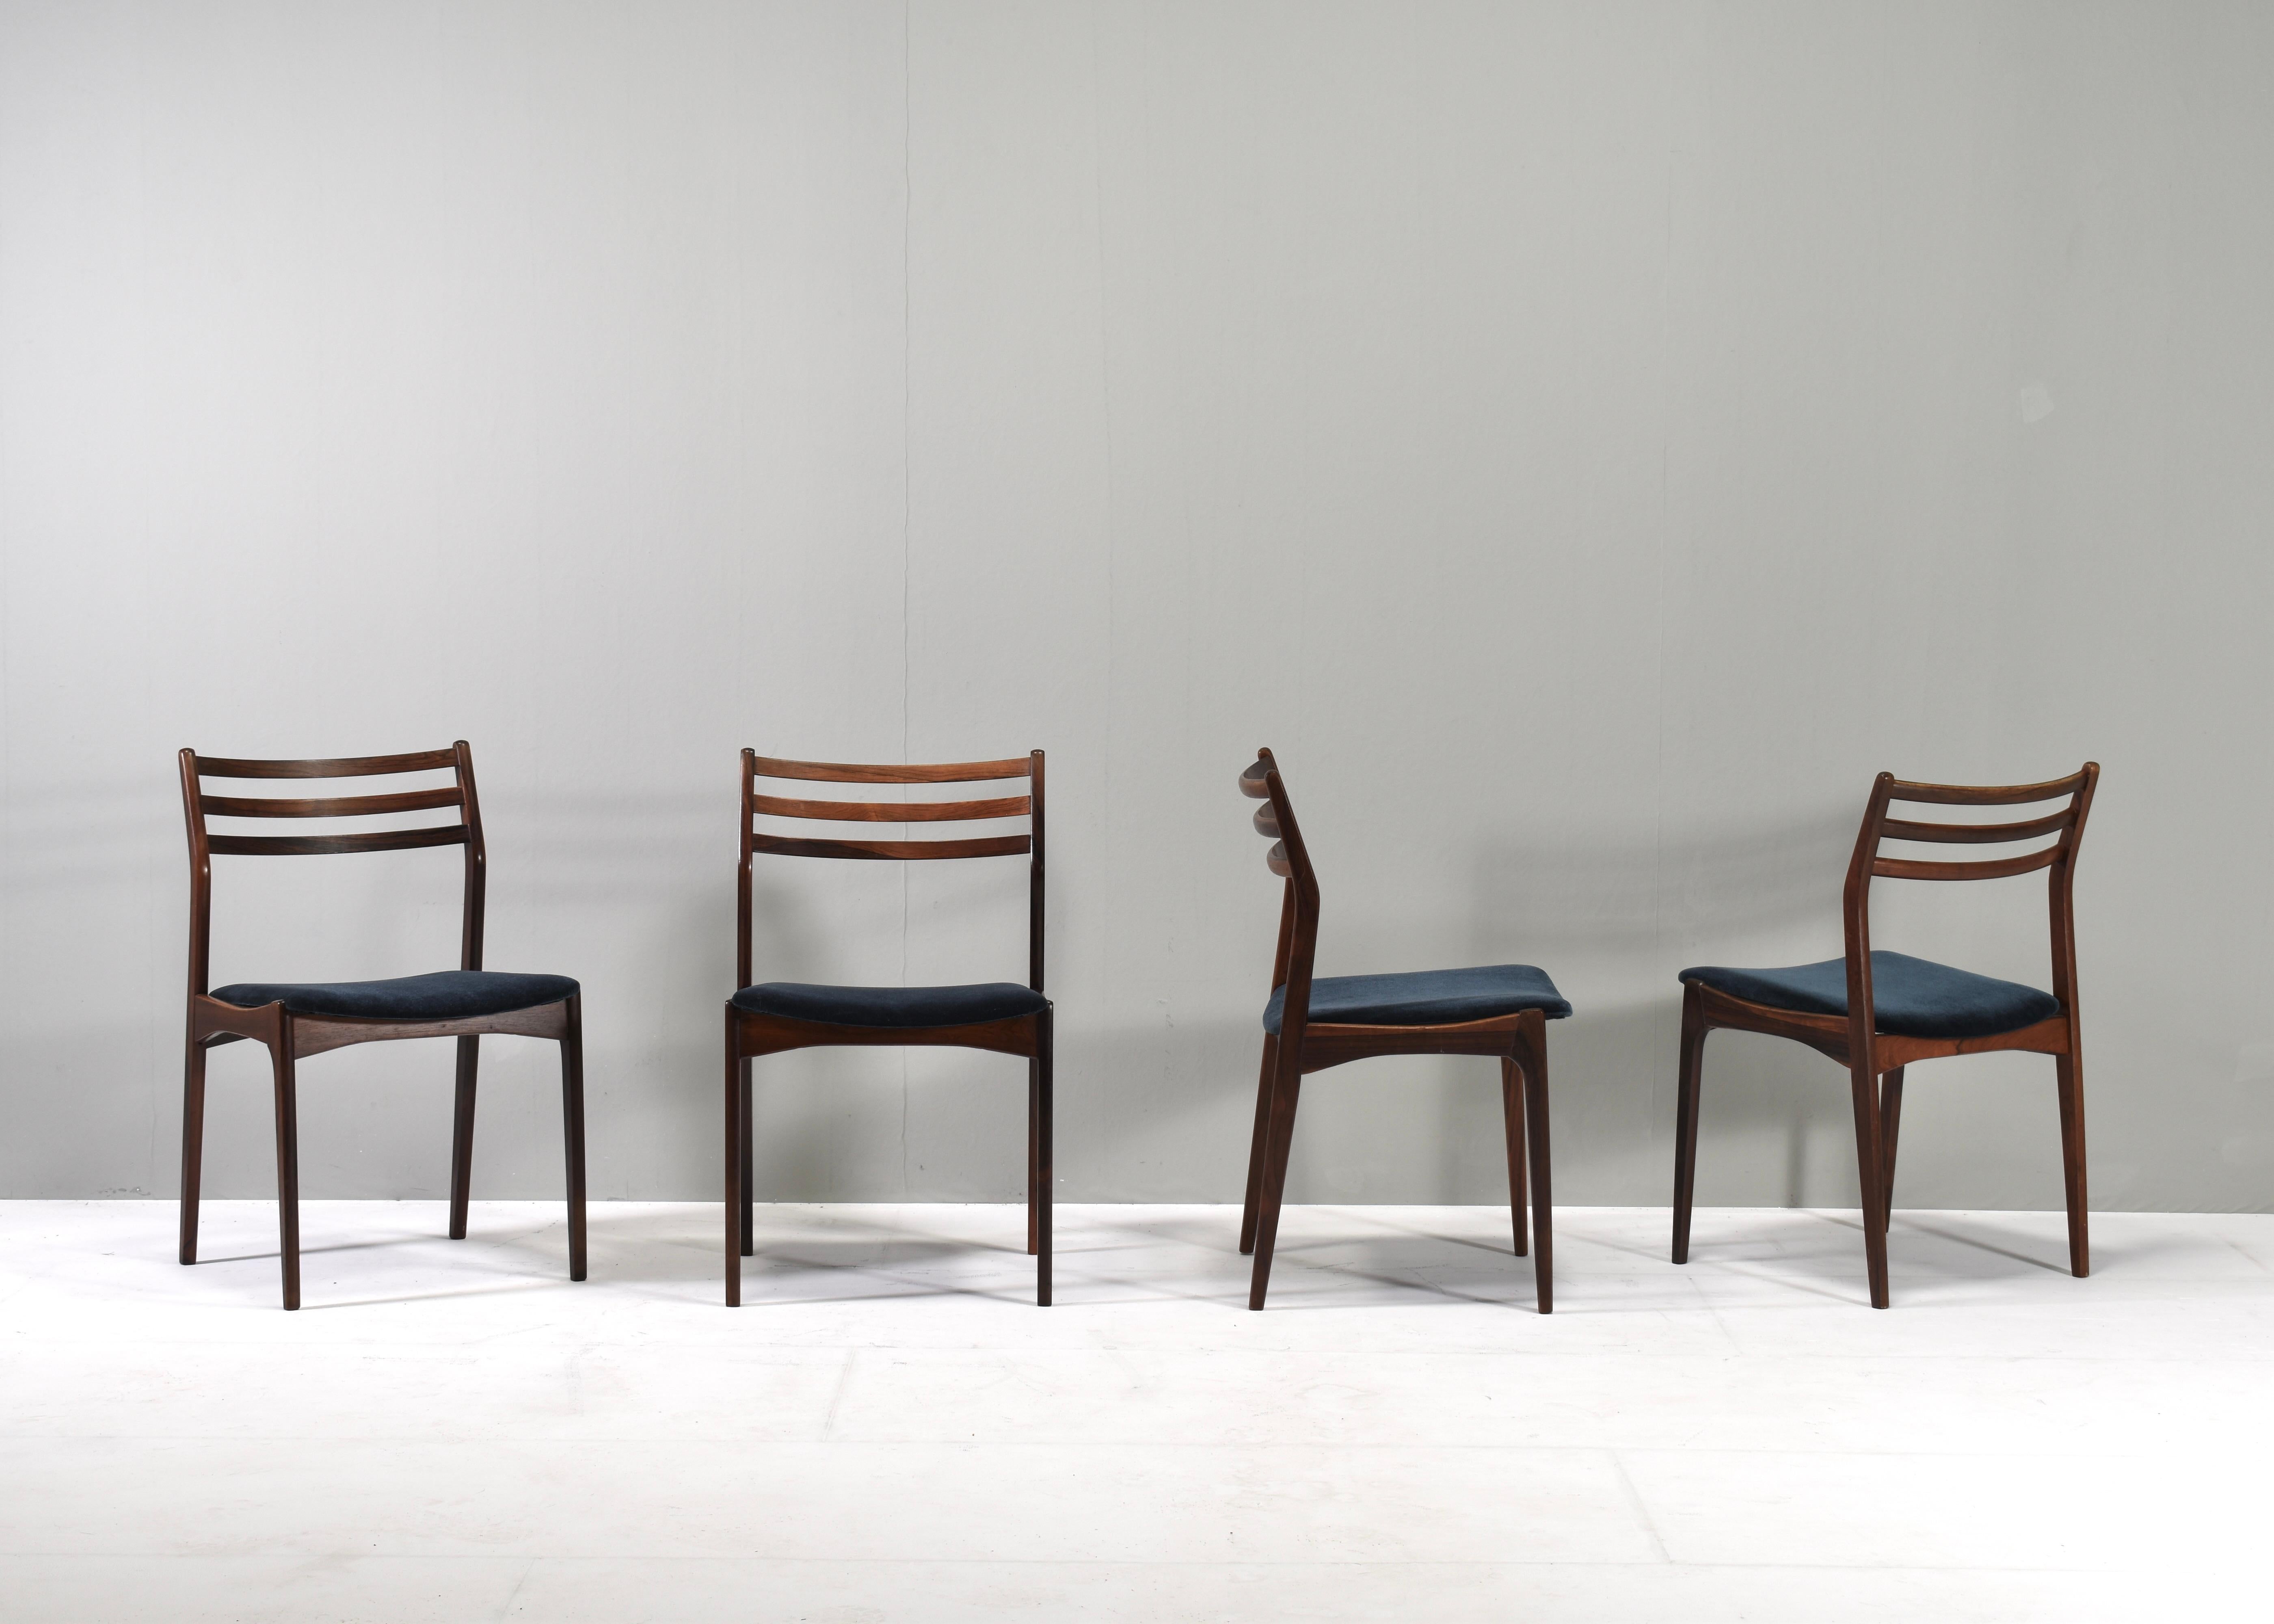 Elegantes Set aus vier skandinavischen Esszimmerstühlen von oder im Stil von Johannes Andersen / Eriksen Vestervig / Arne Vodder - Dänemark, um 1960. Die Stühle sind mit einem schönen dunkelblau-petrolfarbenen Samtstoff von Charmelle